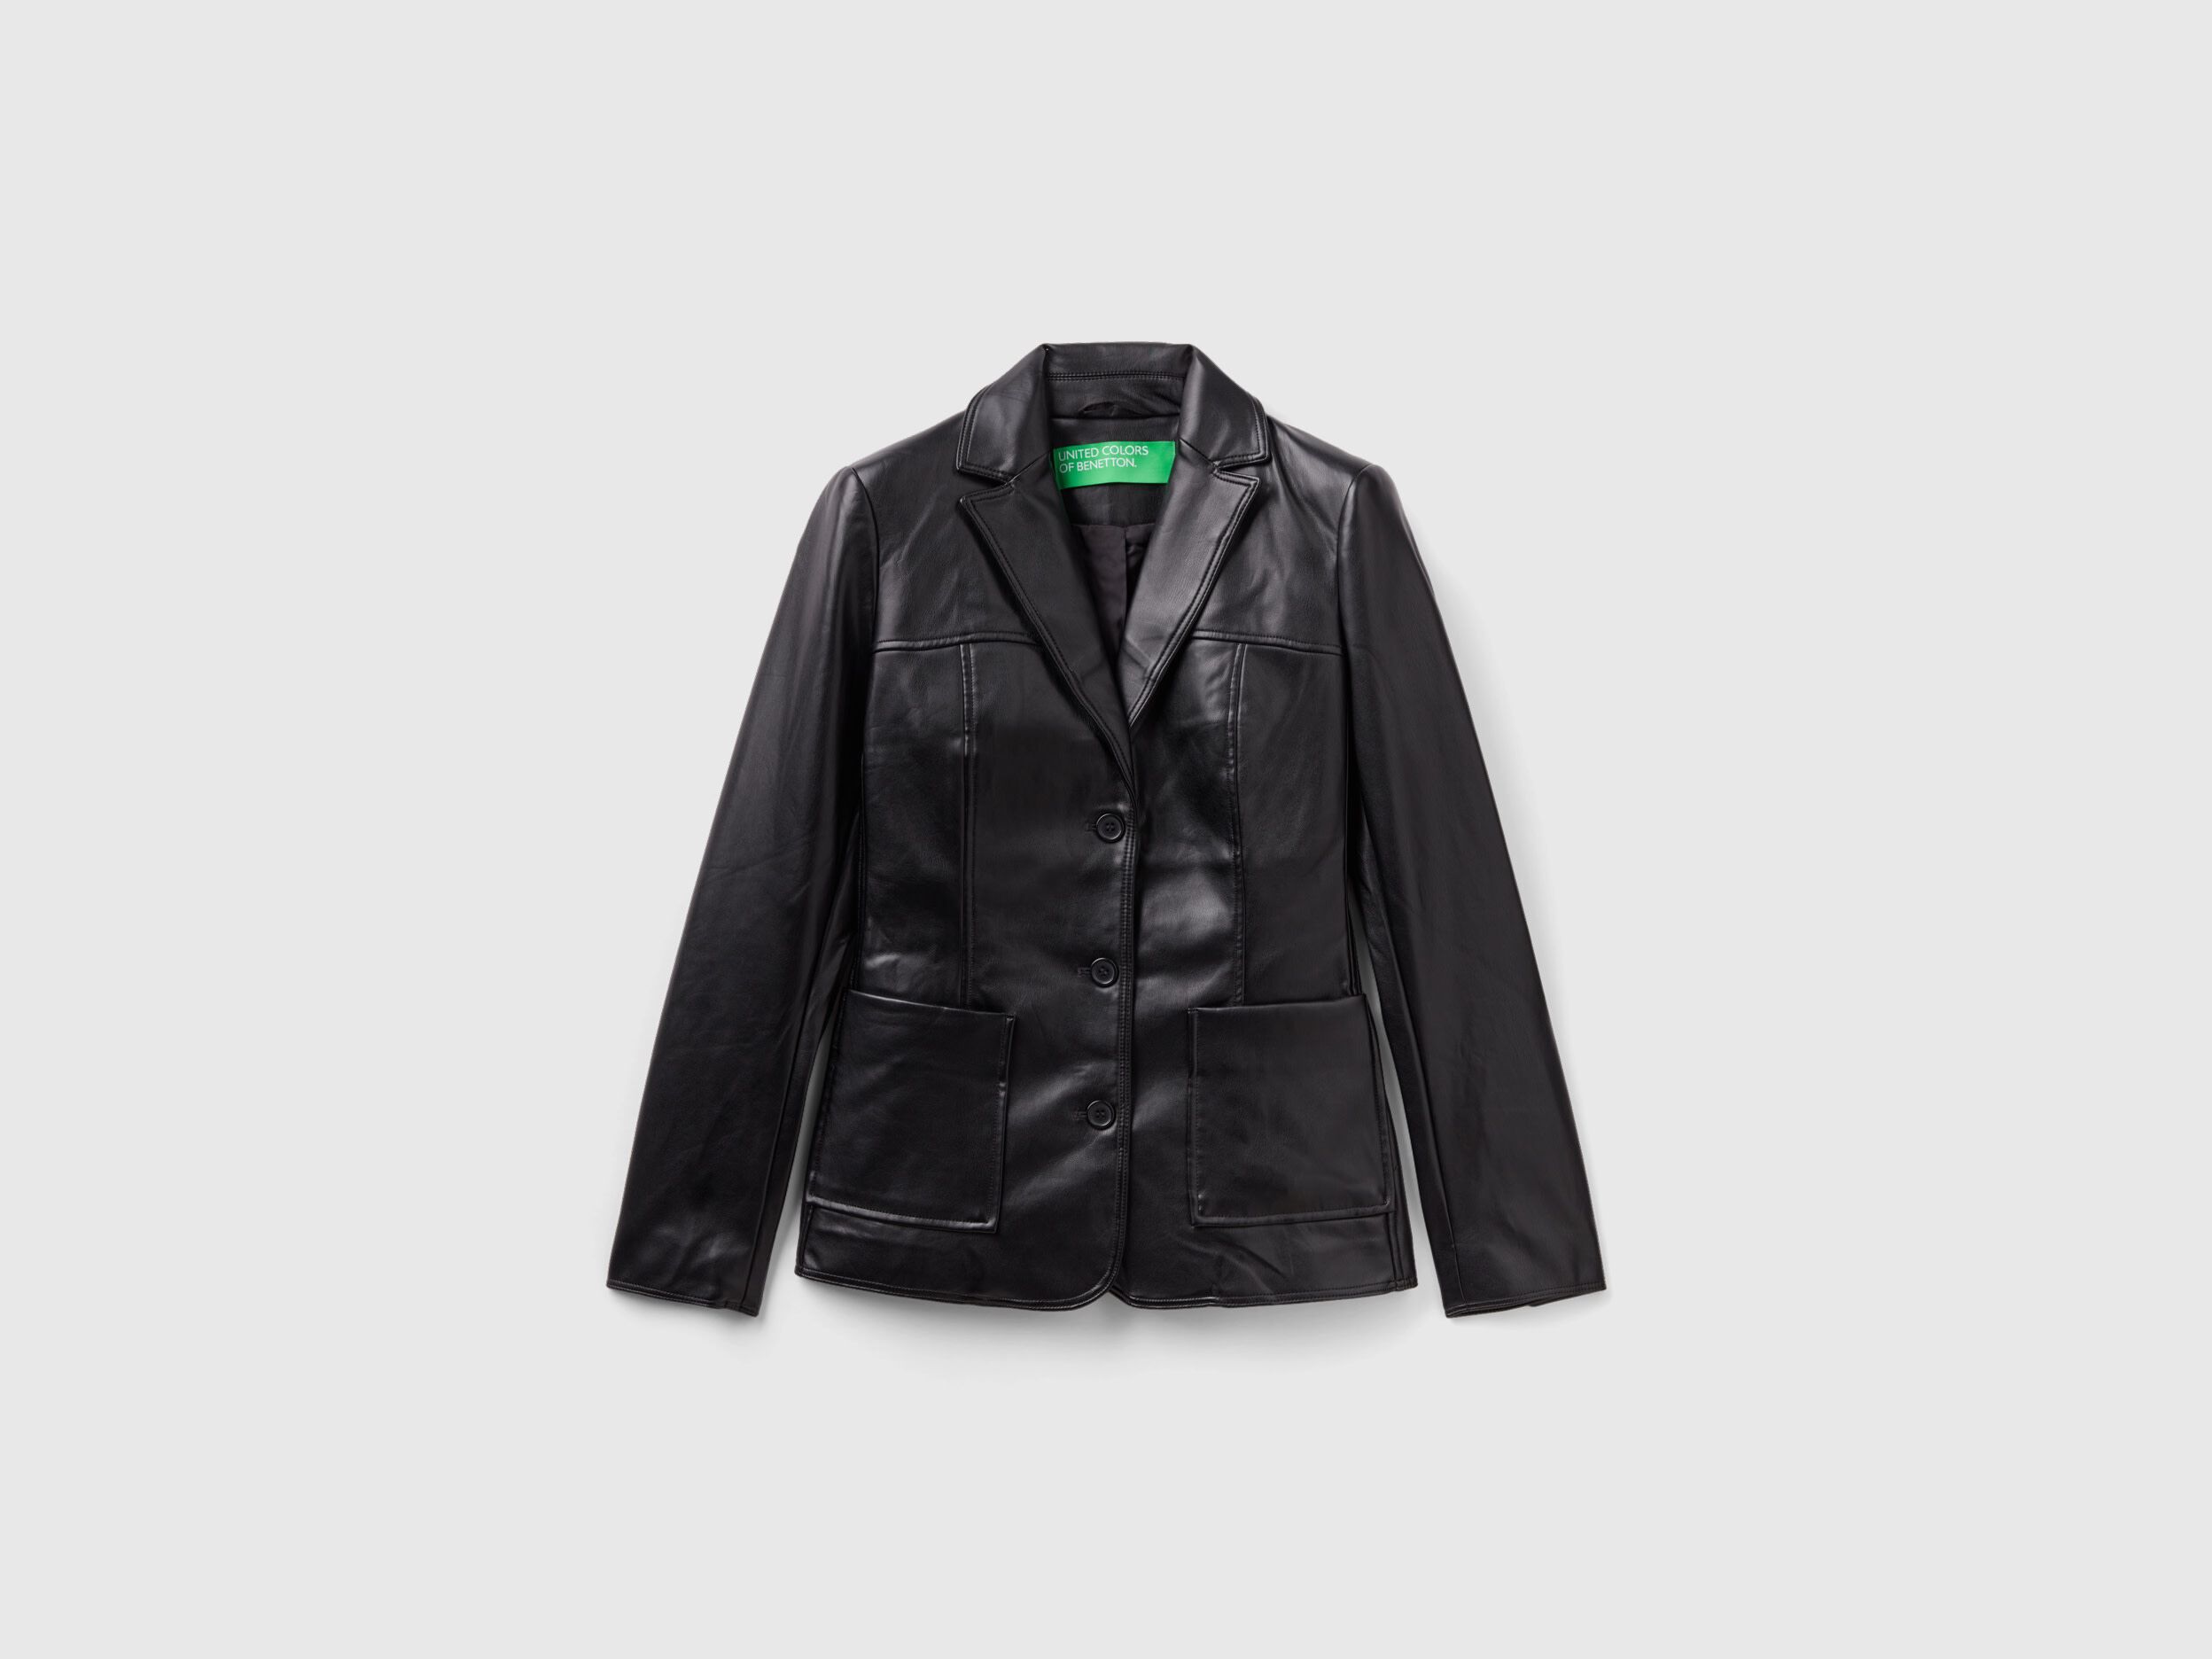 Men's leather jacket - general for sale - by owner - craigslist